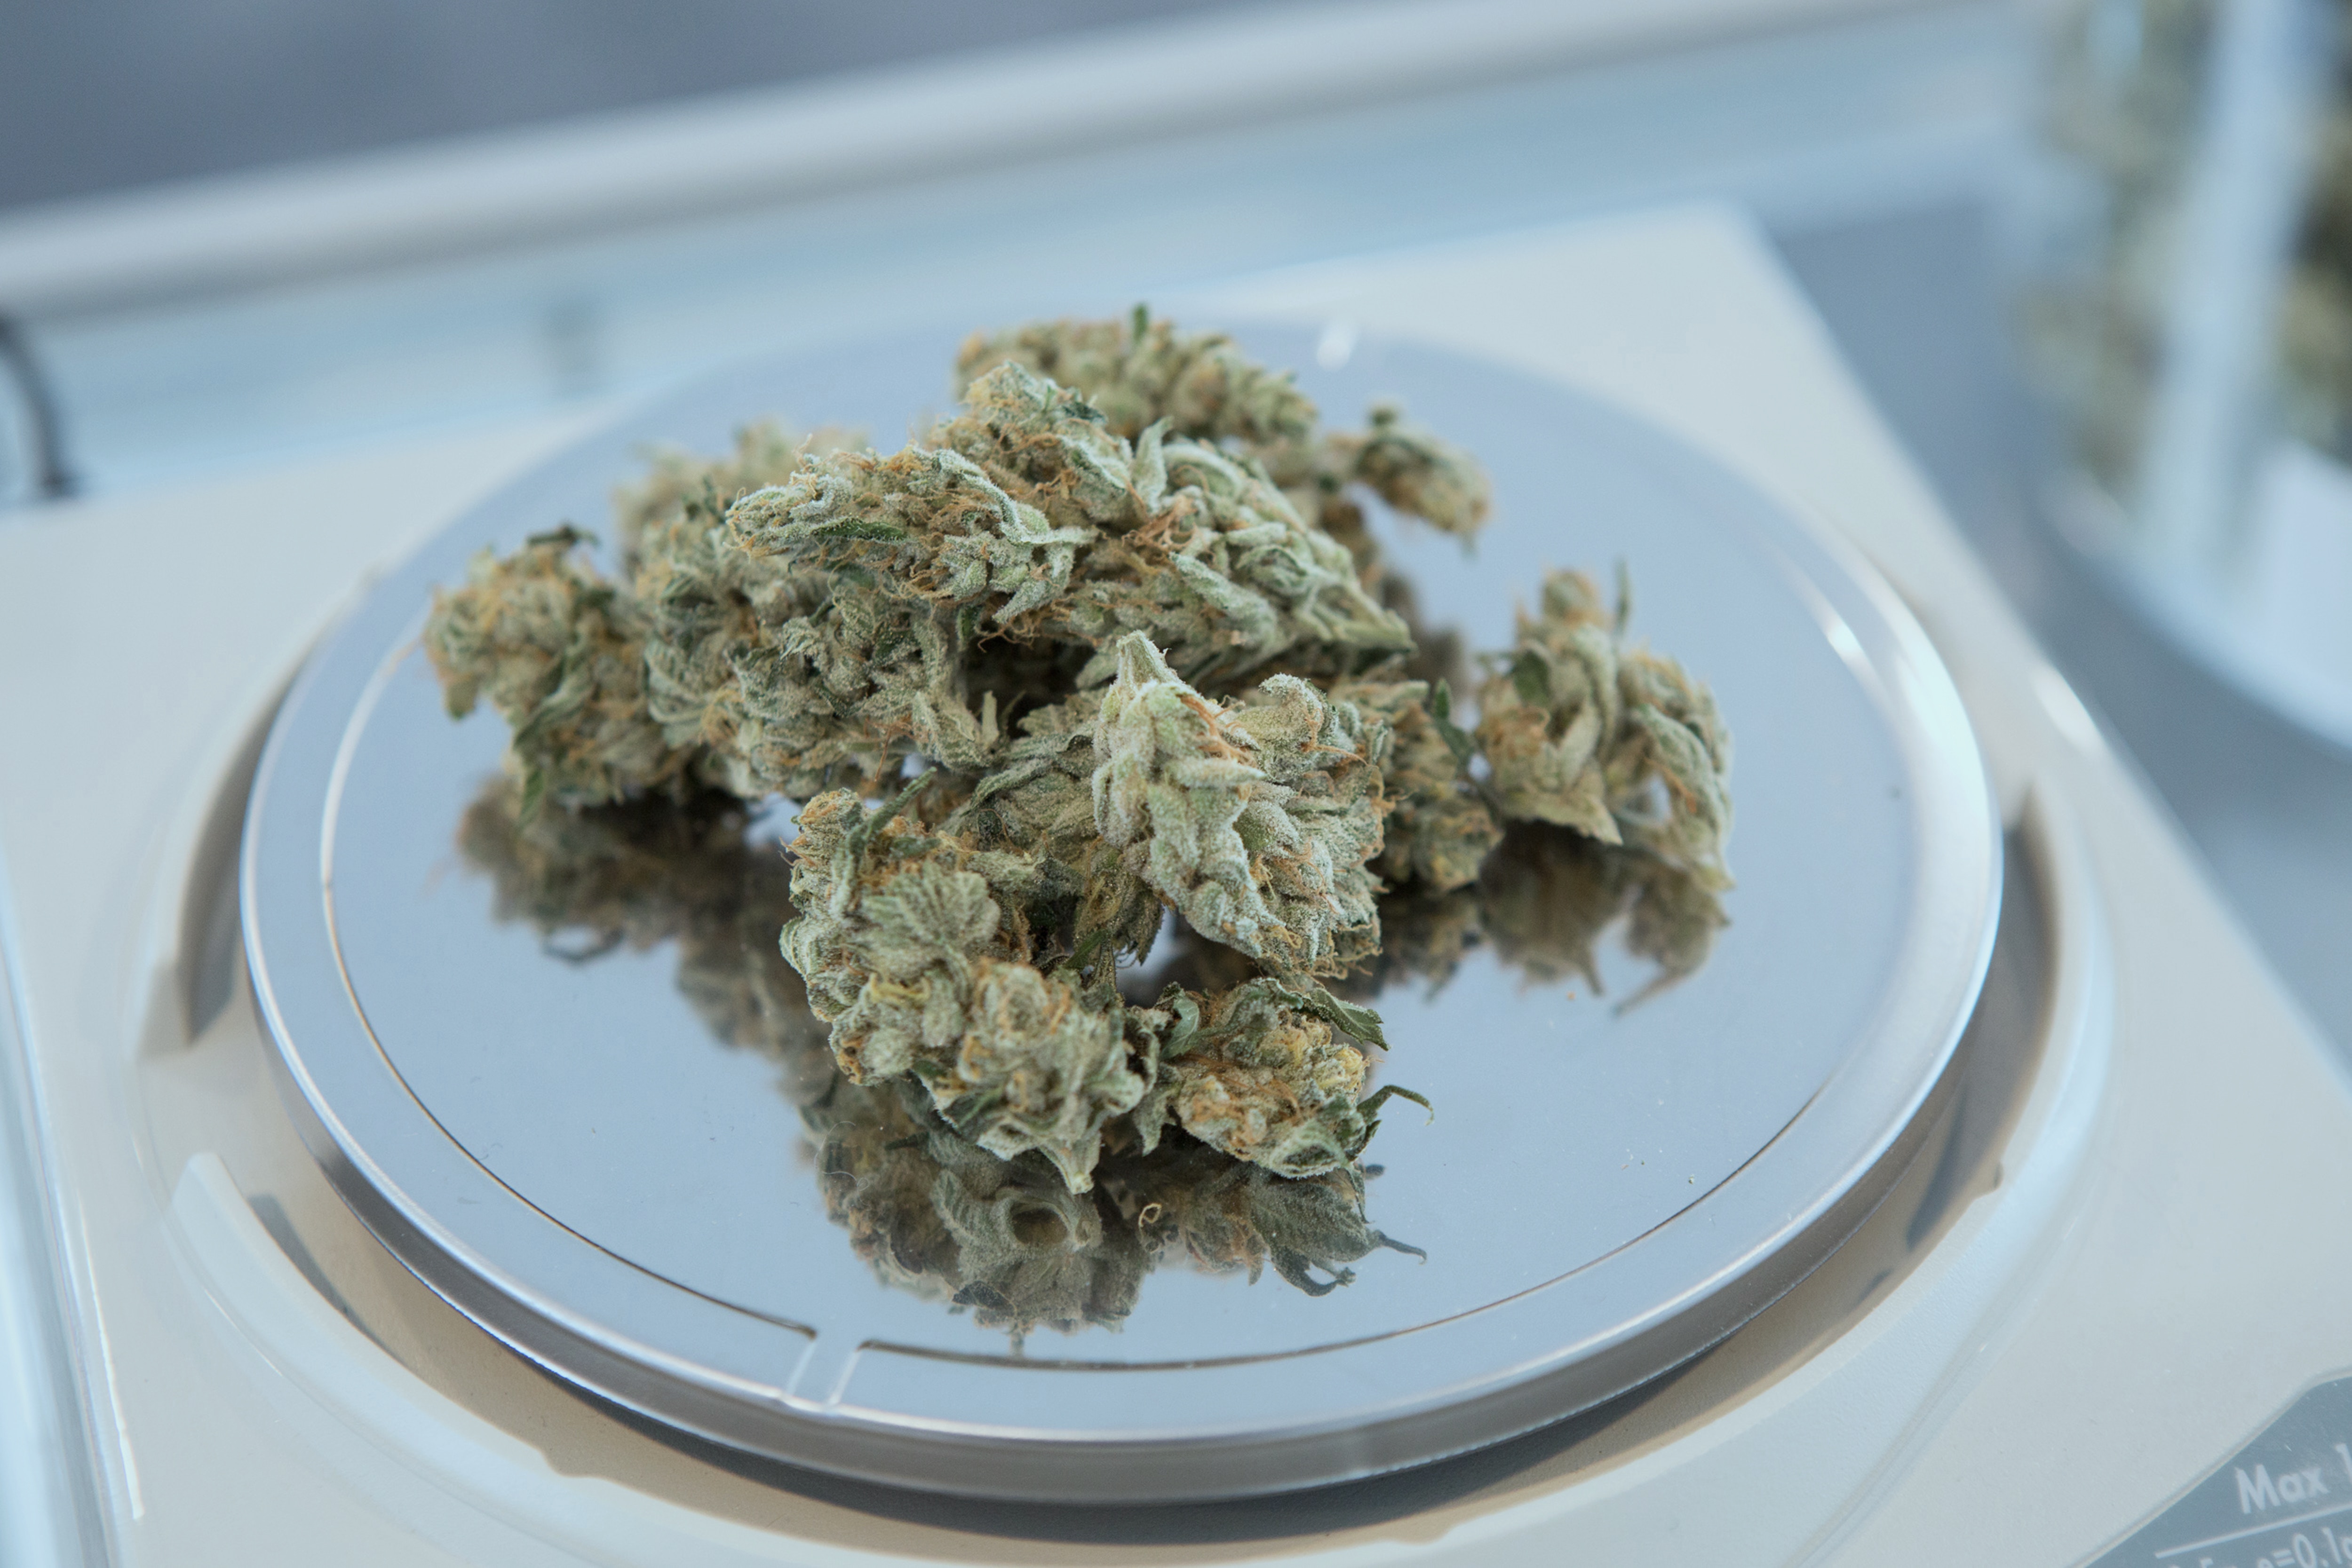 cannabis in a plate